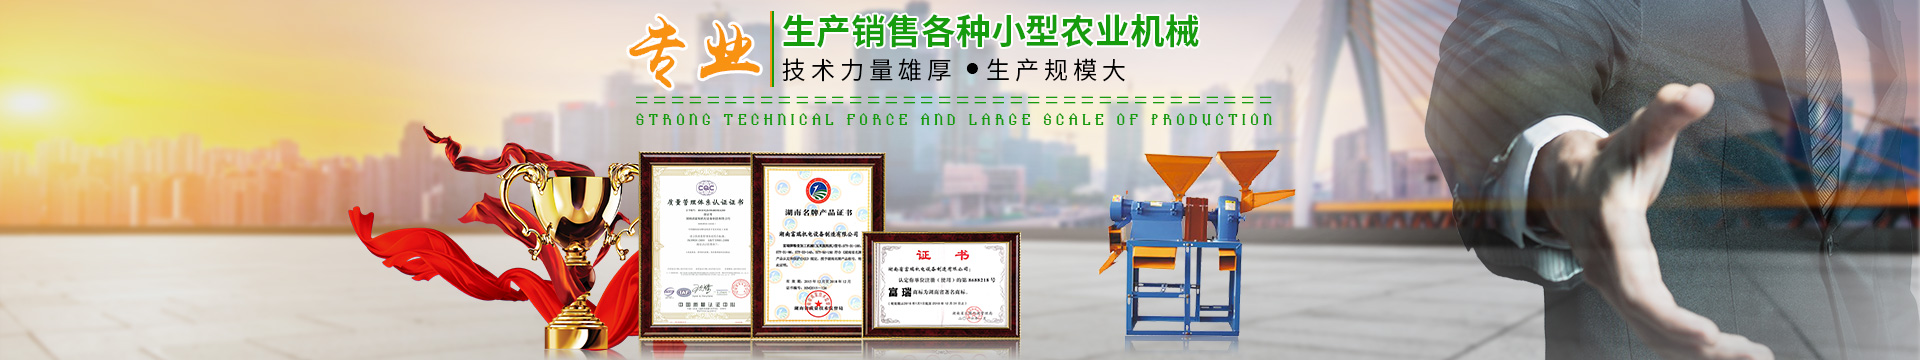 湖南省富瑞机电设备制造有限公司_湖南机电设备|富瑞机电设备|富瑞农业机械